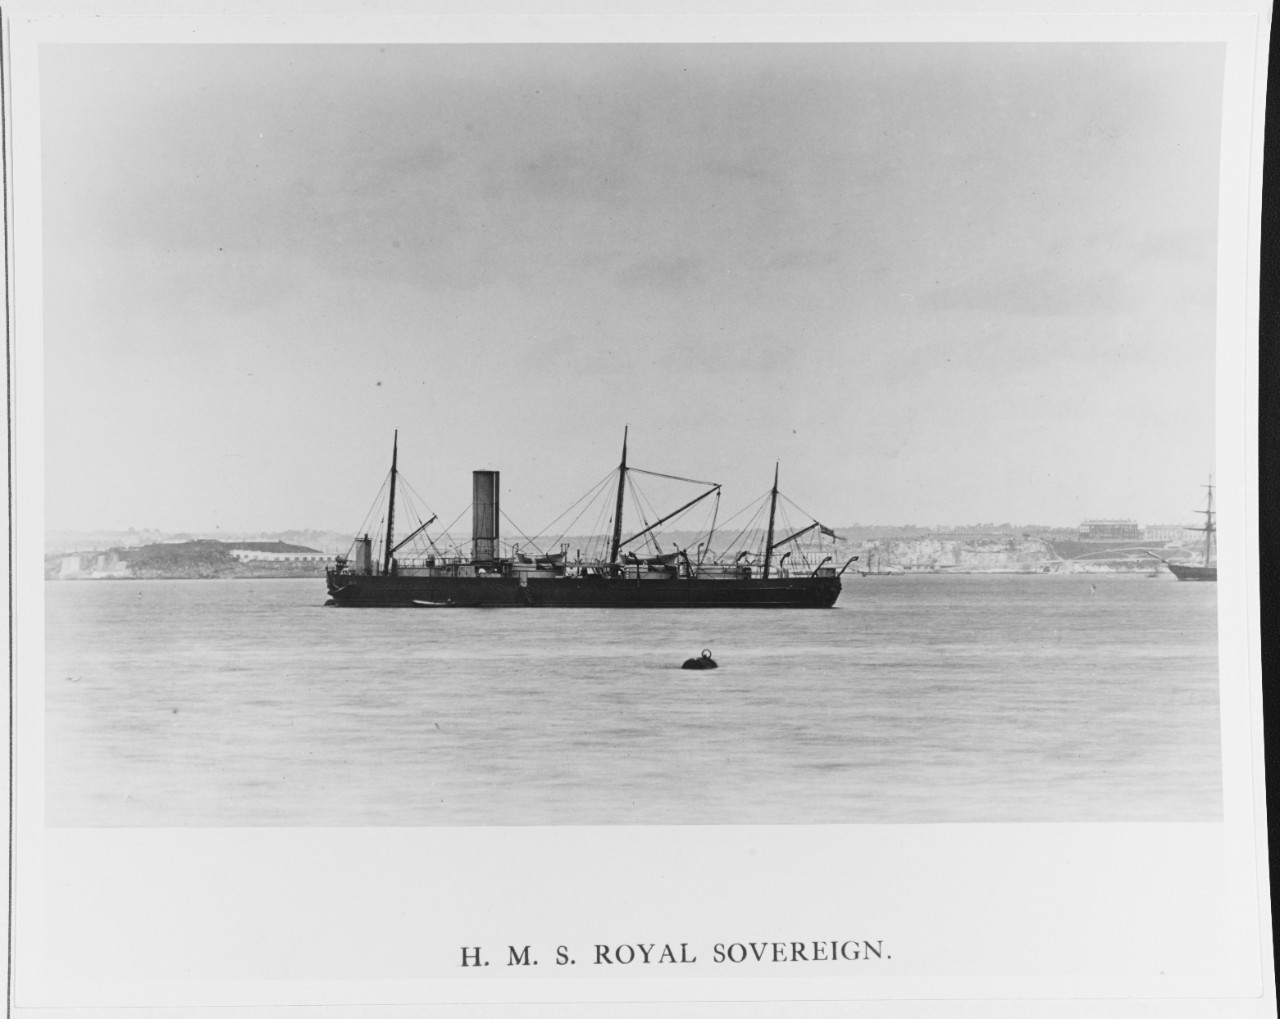 HMS ROYAL SOVERIGN (BRITISH BATTLESHIP, 1857)